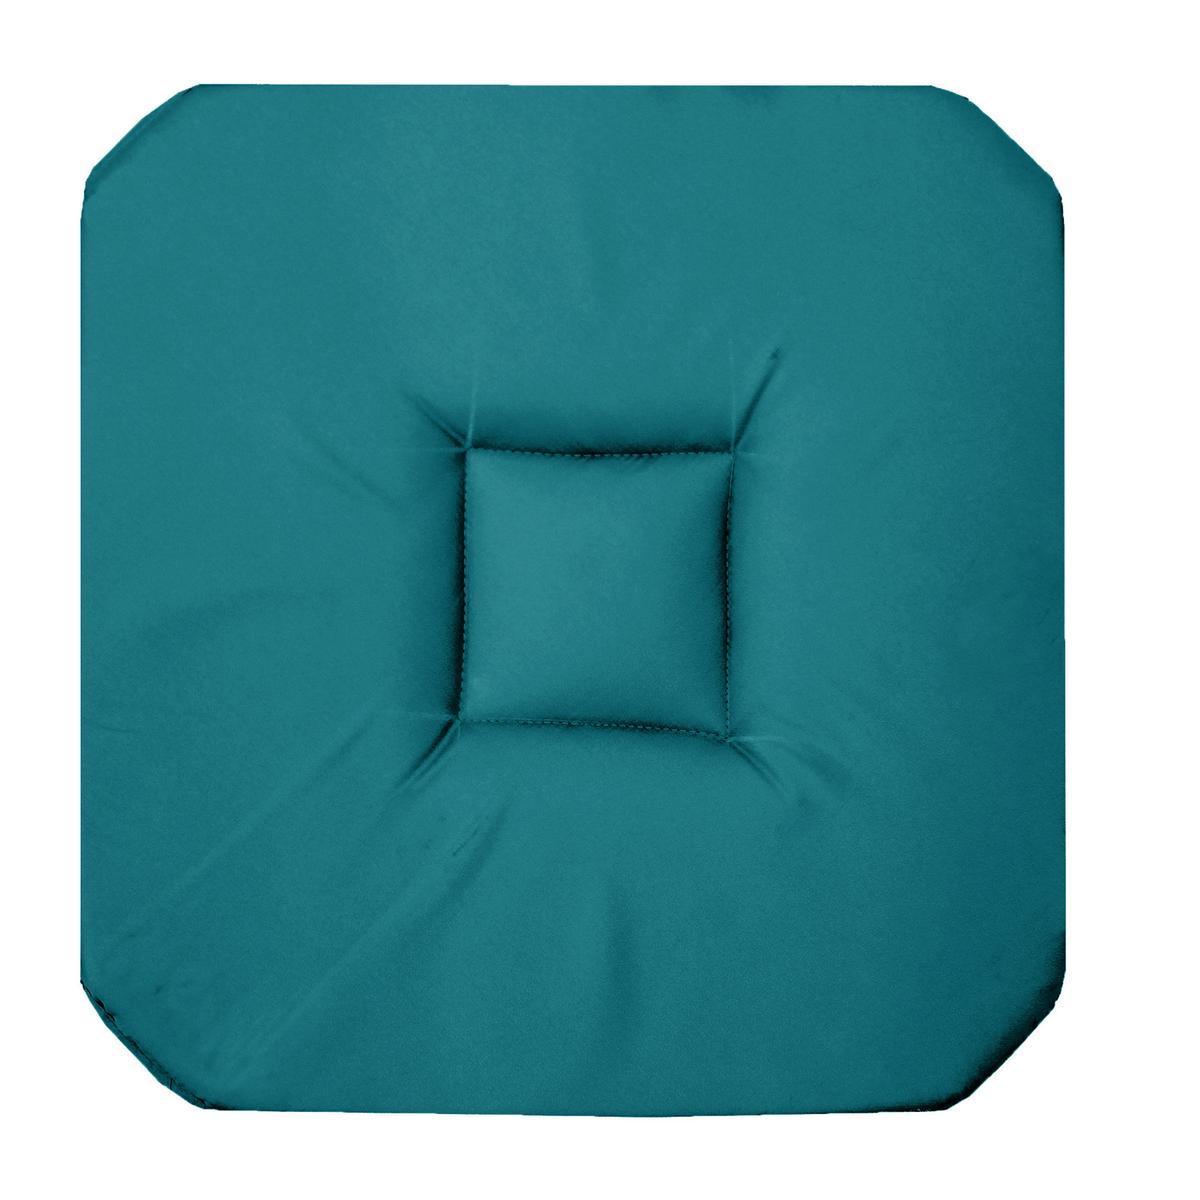 Galette de chaise - 36 x 36 x H 3,5 cm - Bleu